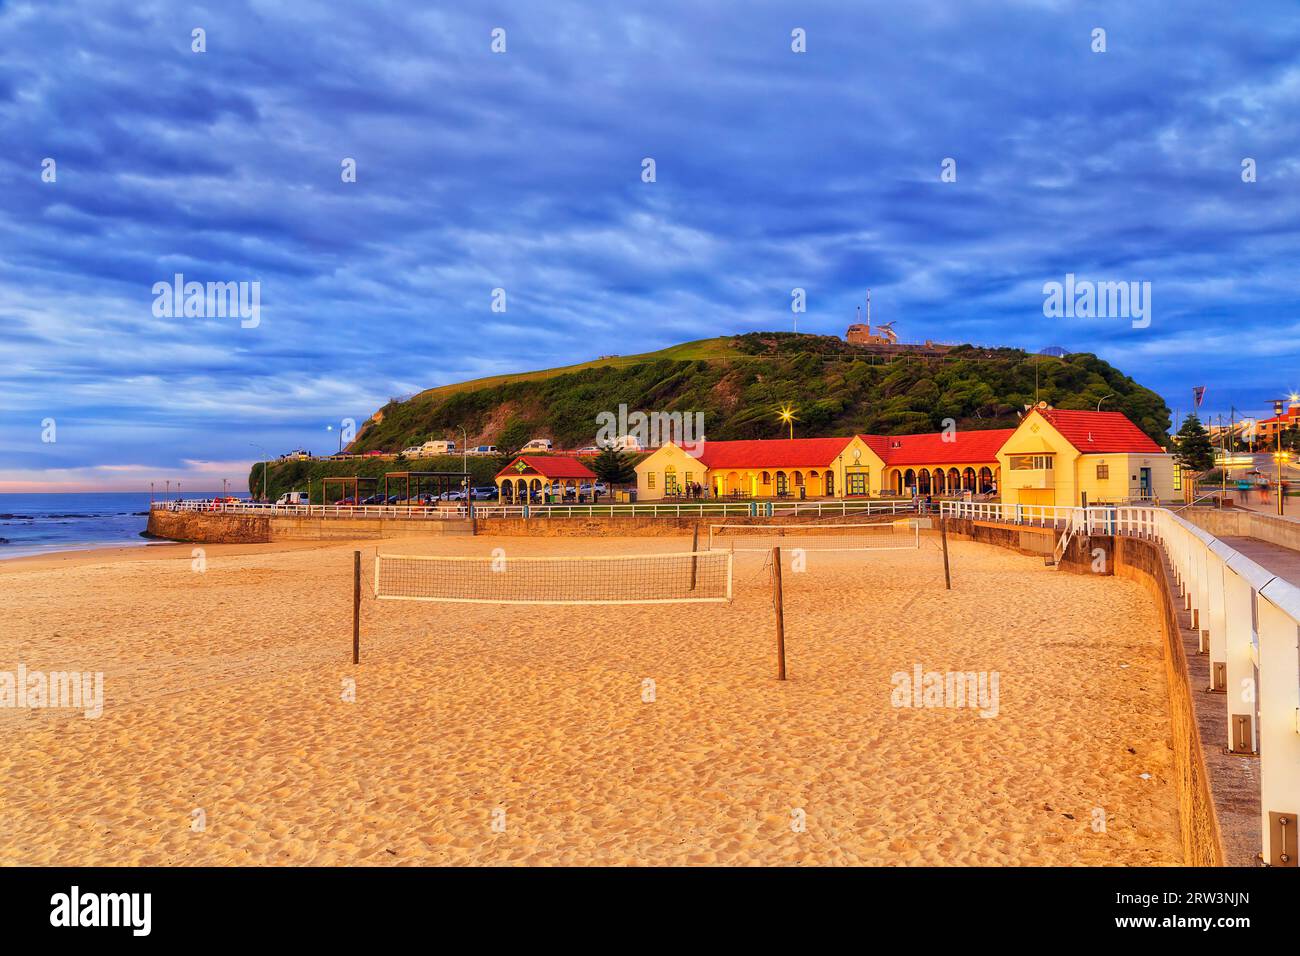 Bagni pubblici sulla spiaggia di Nobbys e campi sportivi ricreativi nella città australiana di Newcastle all'alba. Foto Stock